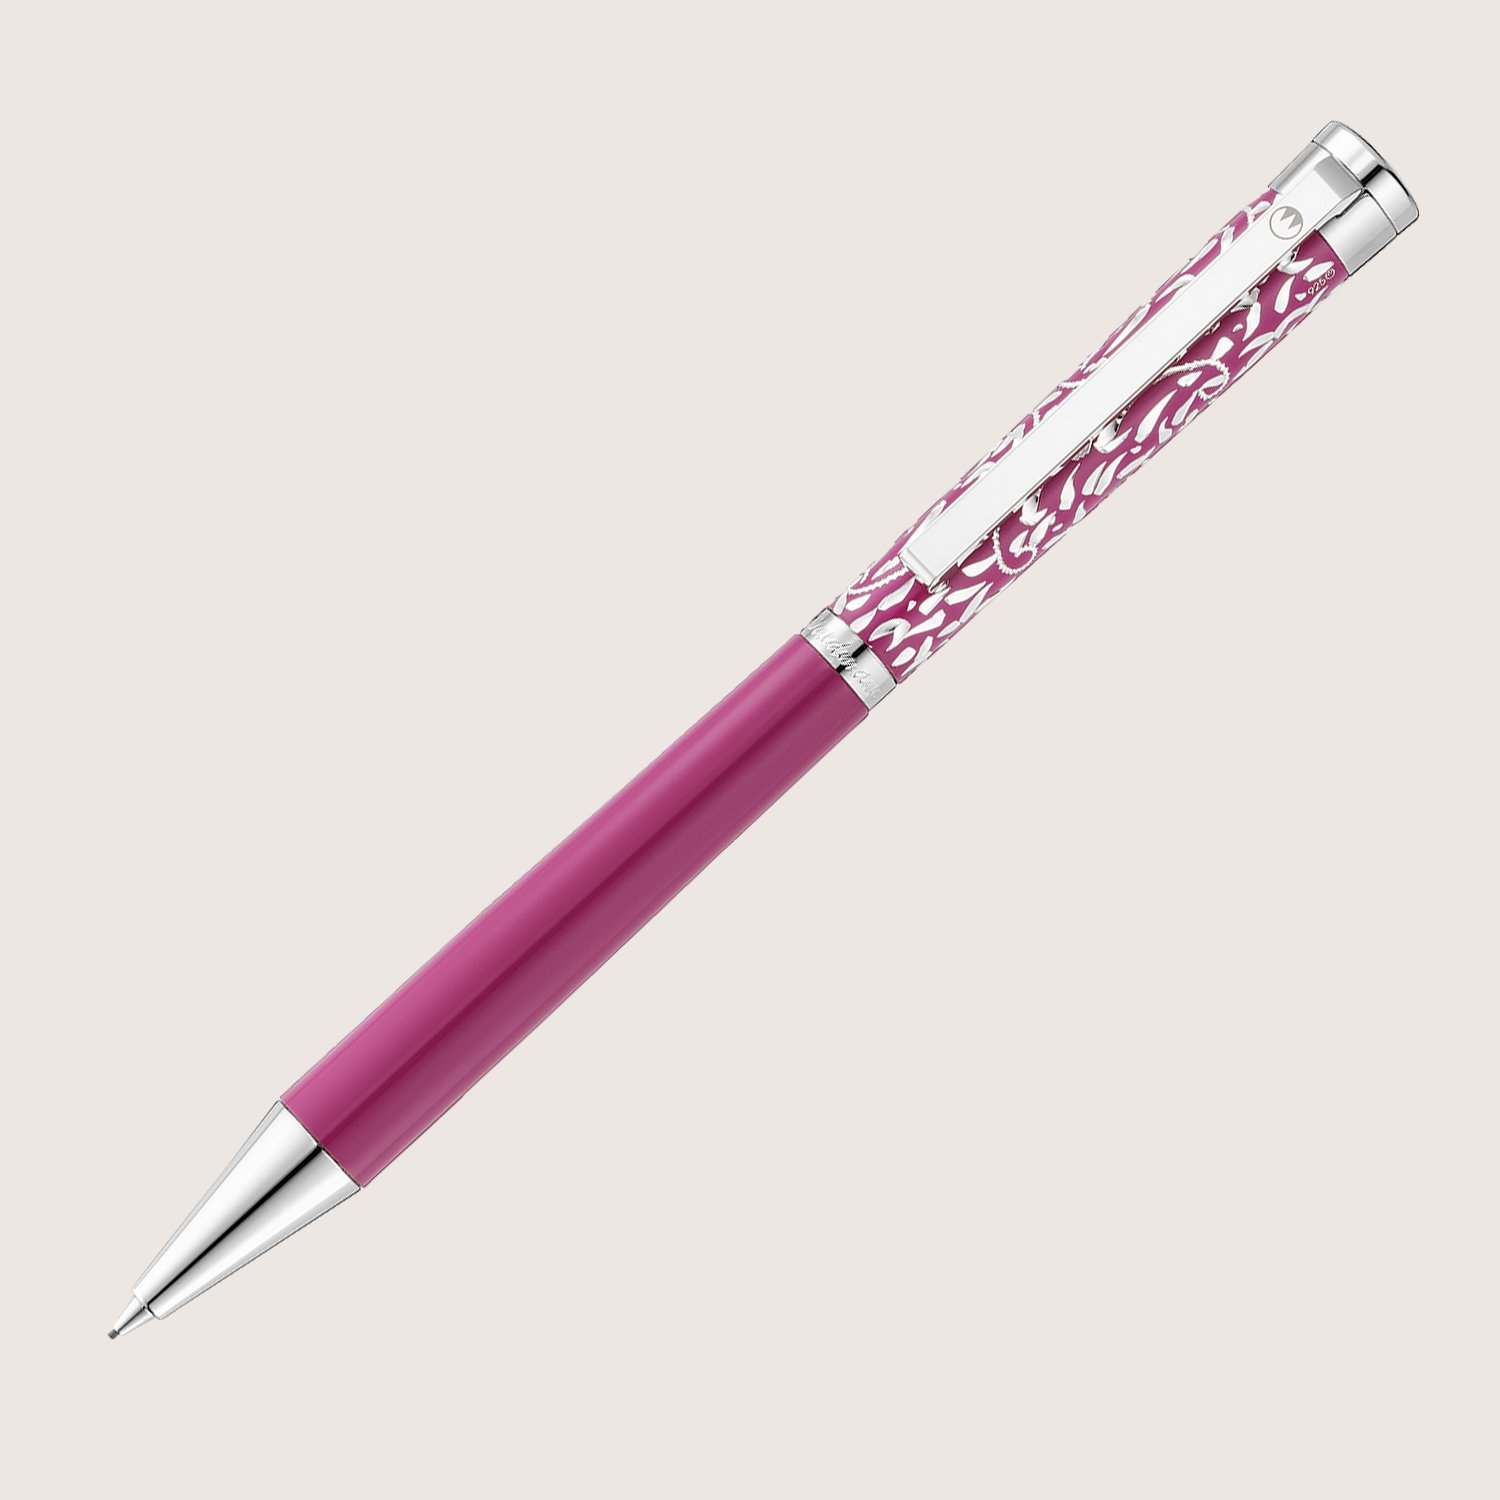 XETRA VIENNA Drehbleistift Lack pink mit Handgravur - Special Edition